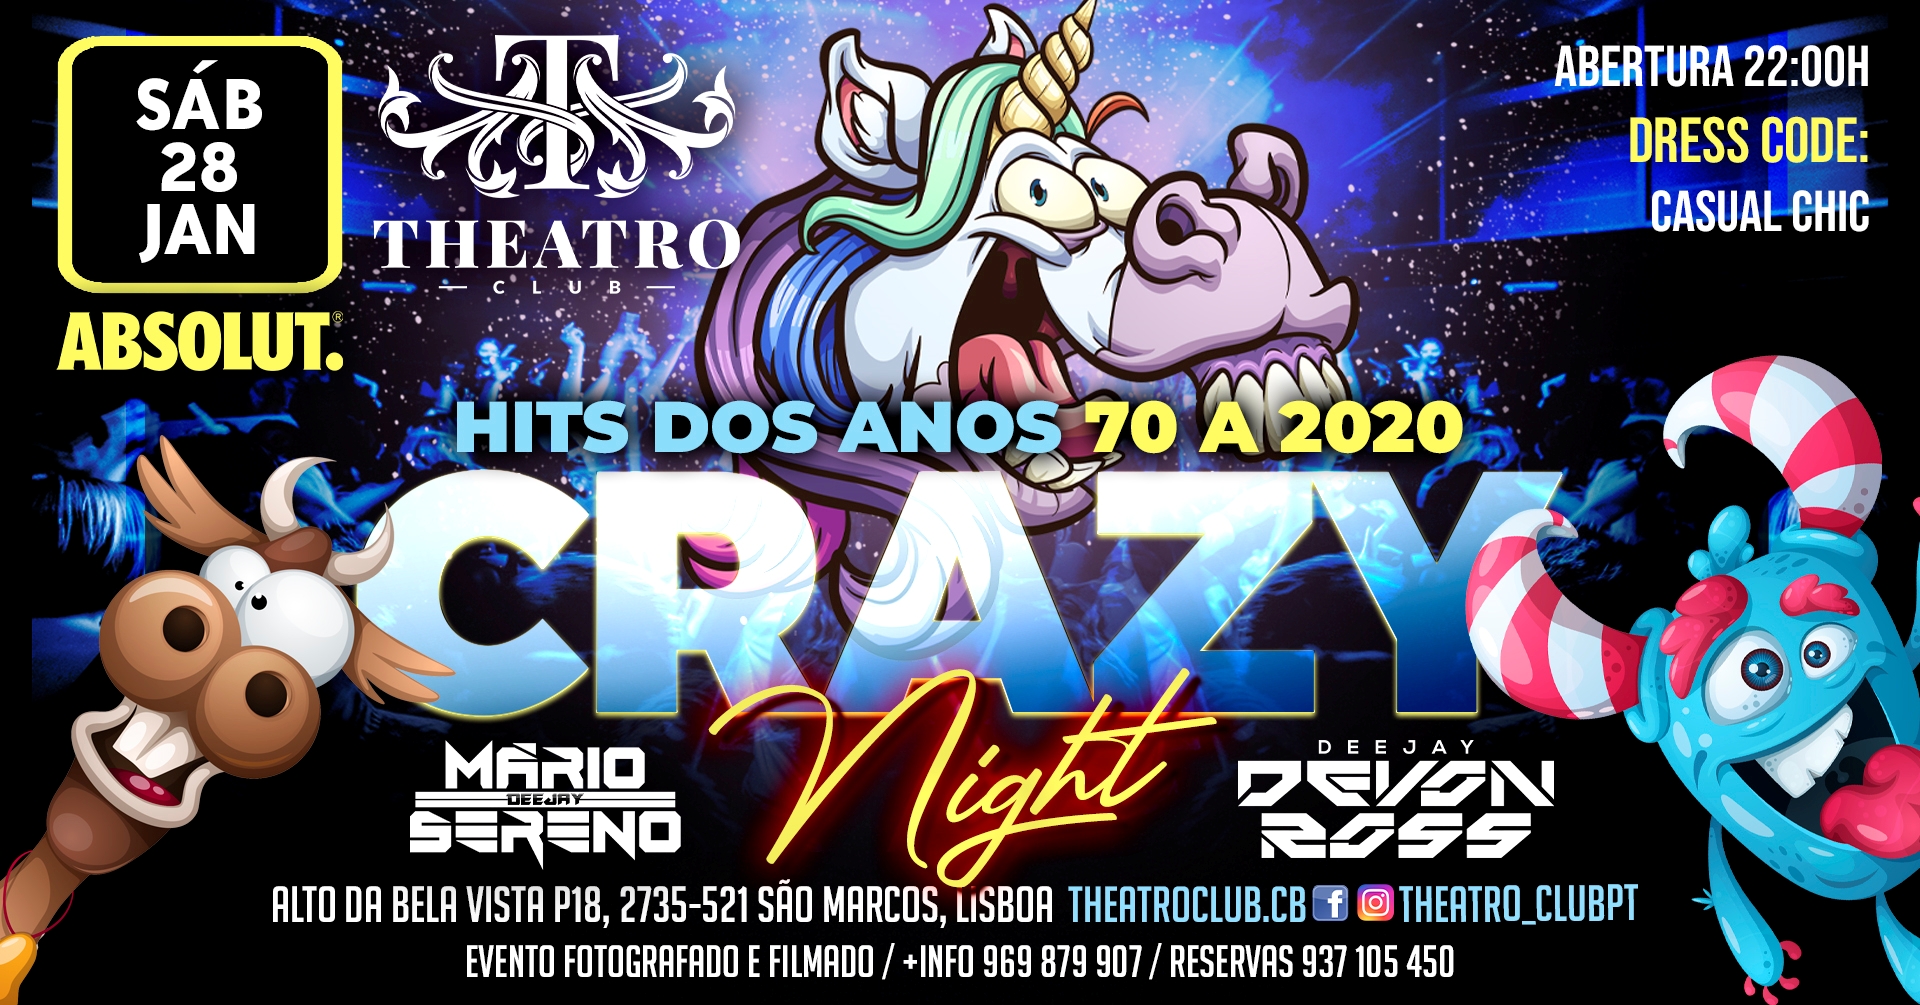 Crazy Night com Dj Devon Ross & Dj Mário Sereno